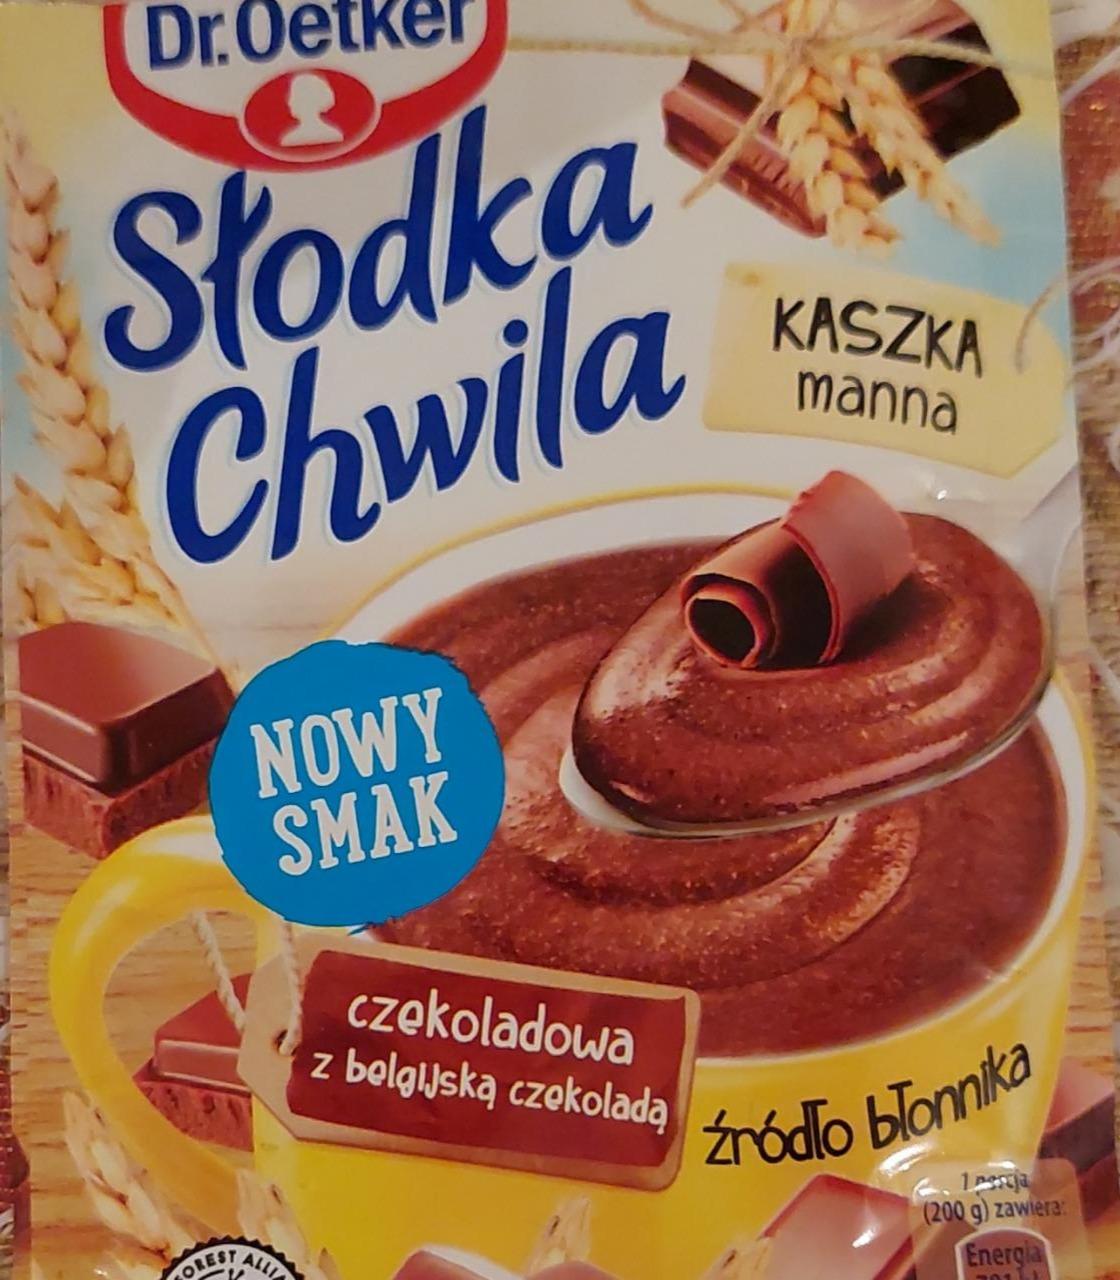 Фото - Каша манна Slodka Chwila з бельгійським шоколадом Dr.Oetker